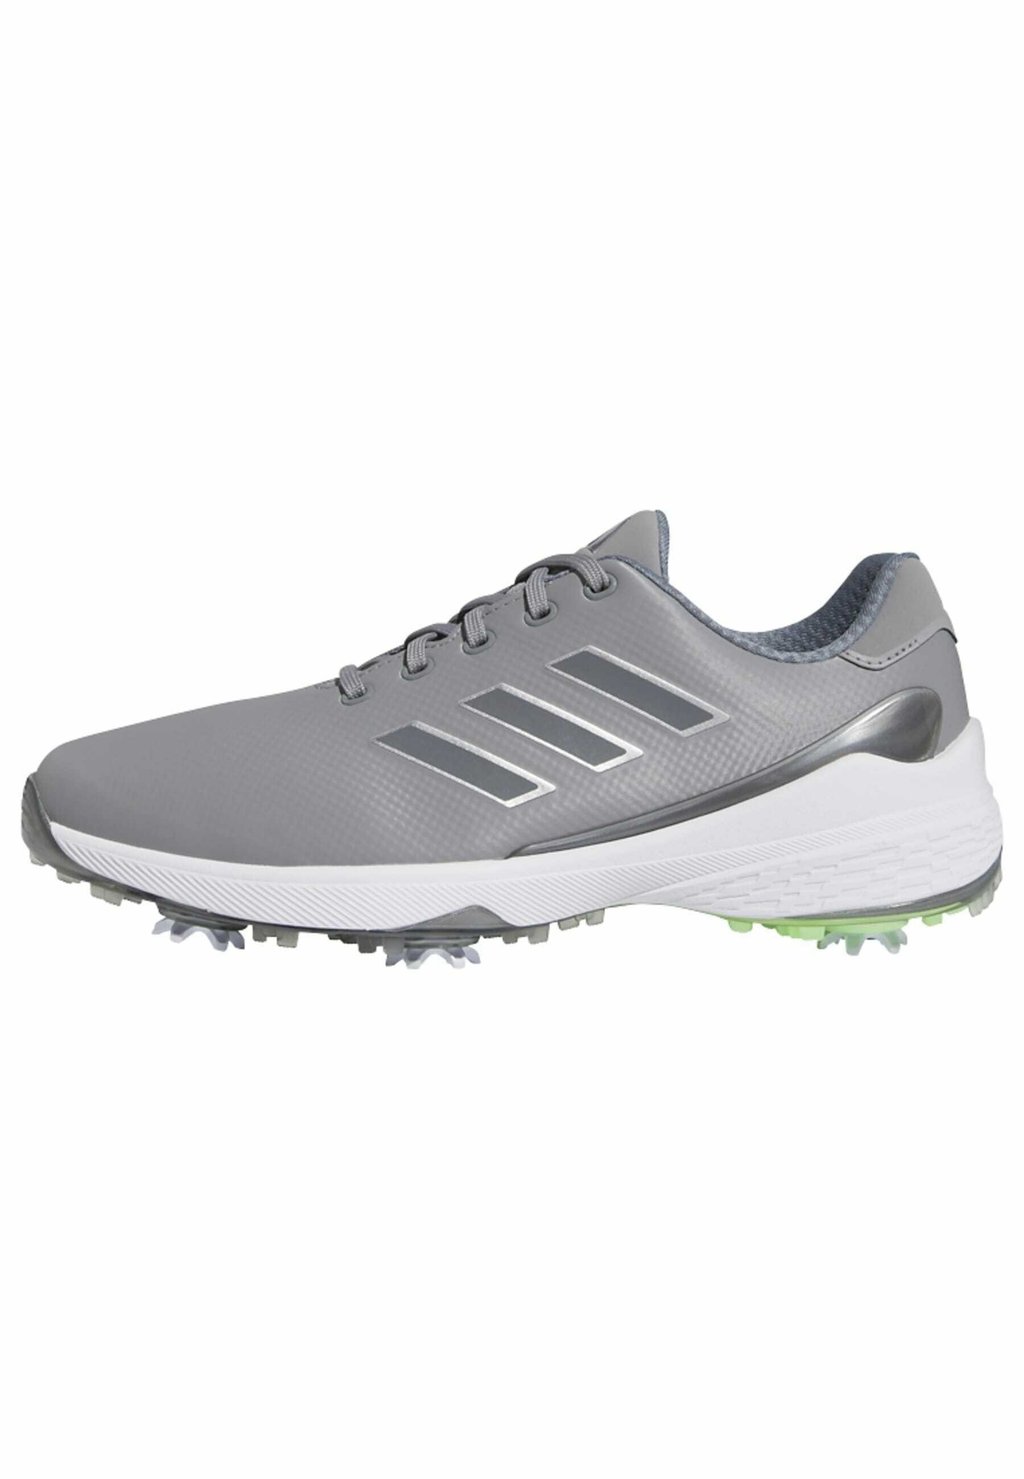 Туфли для гольфа adidas Golf, серый три железа металлик серебристый металлик туфли для гольфа adidas golf серый три железа металлик серебристый металлик